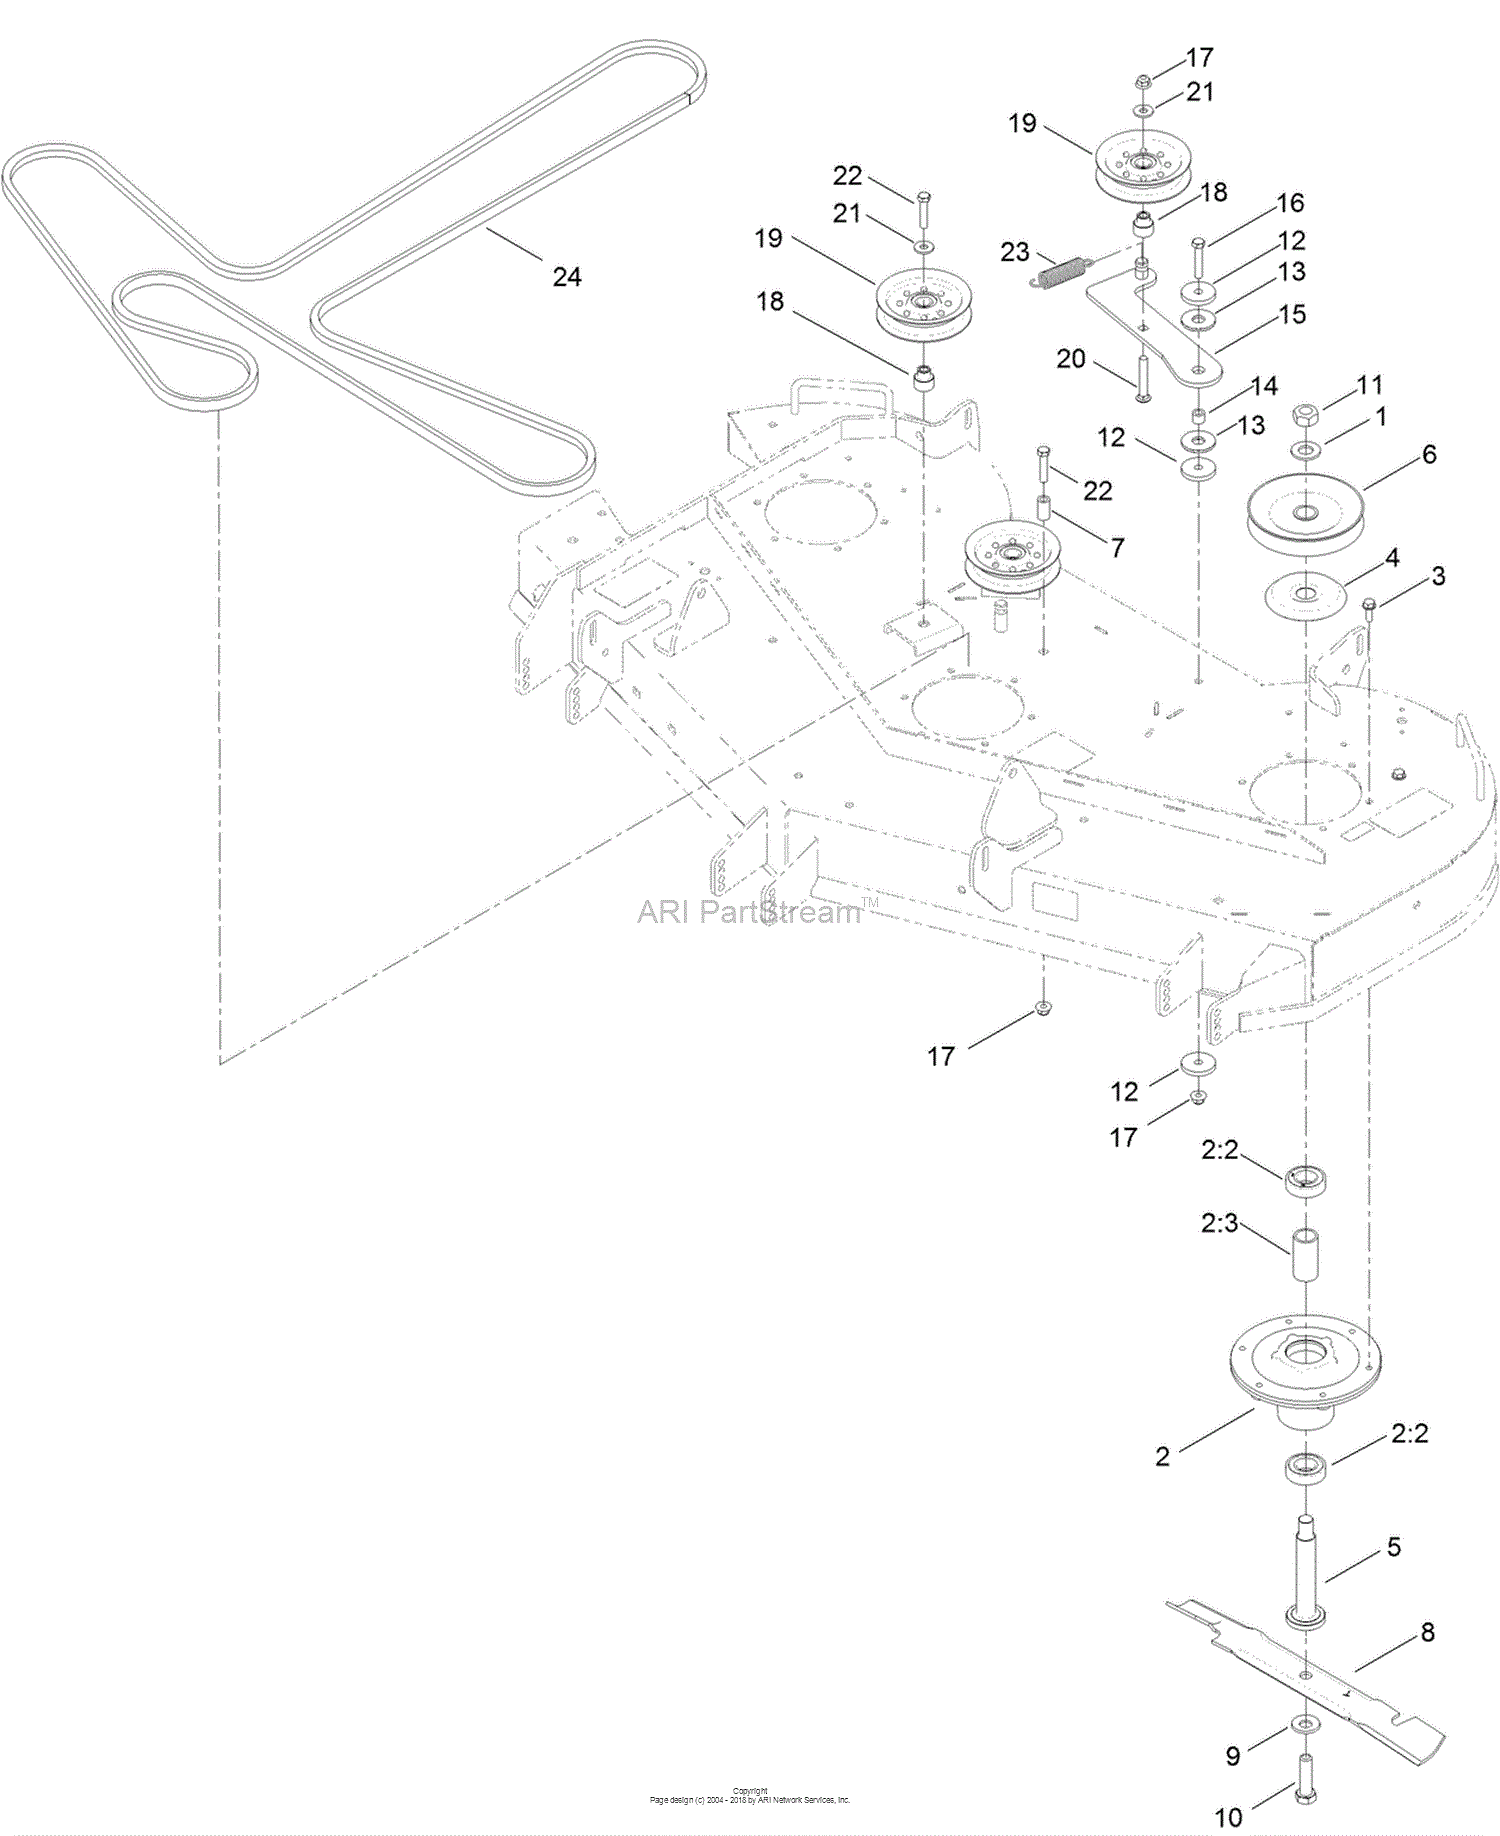 Toro 74852, TITAN ZX 5400 Zero-Turn-Radius Riding Mower, 2014 (SN 